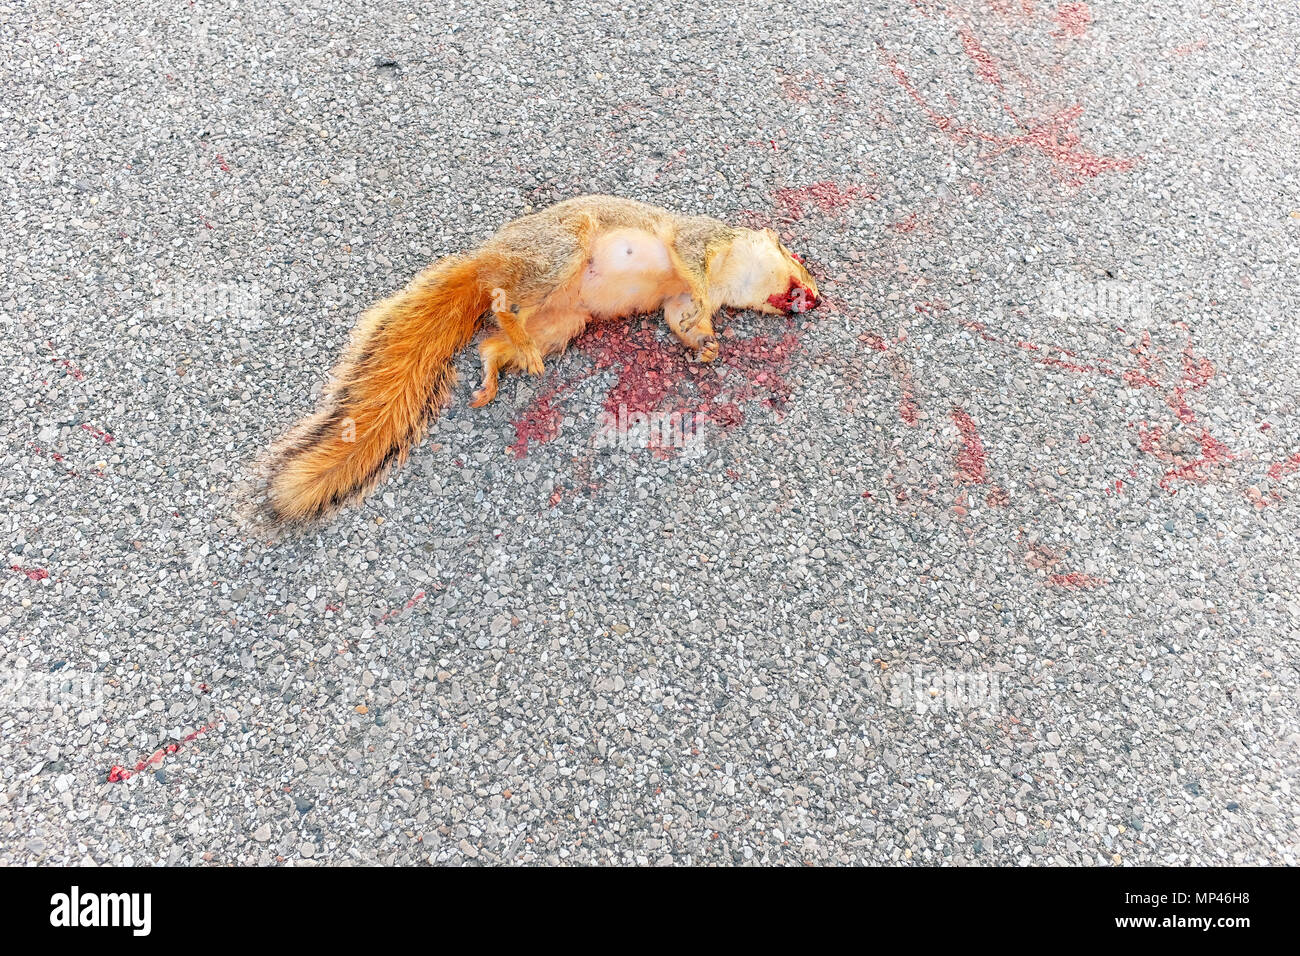 Sciurus carolinensis, l'orientale scoiattolo grigio, morto su una strada asfaltata recentemente colpito e ucciso da un veicolo. Foto Stock